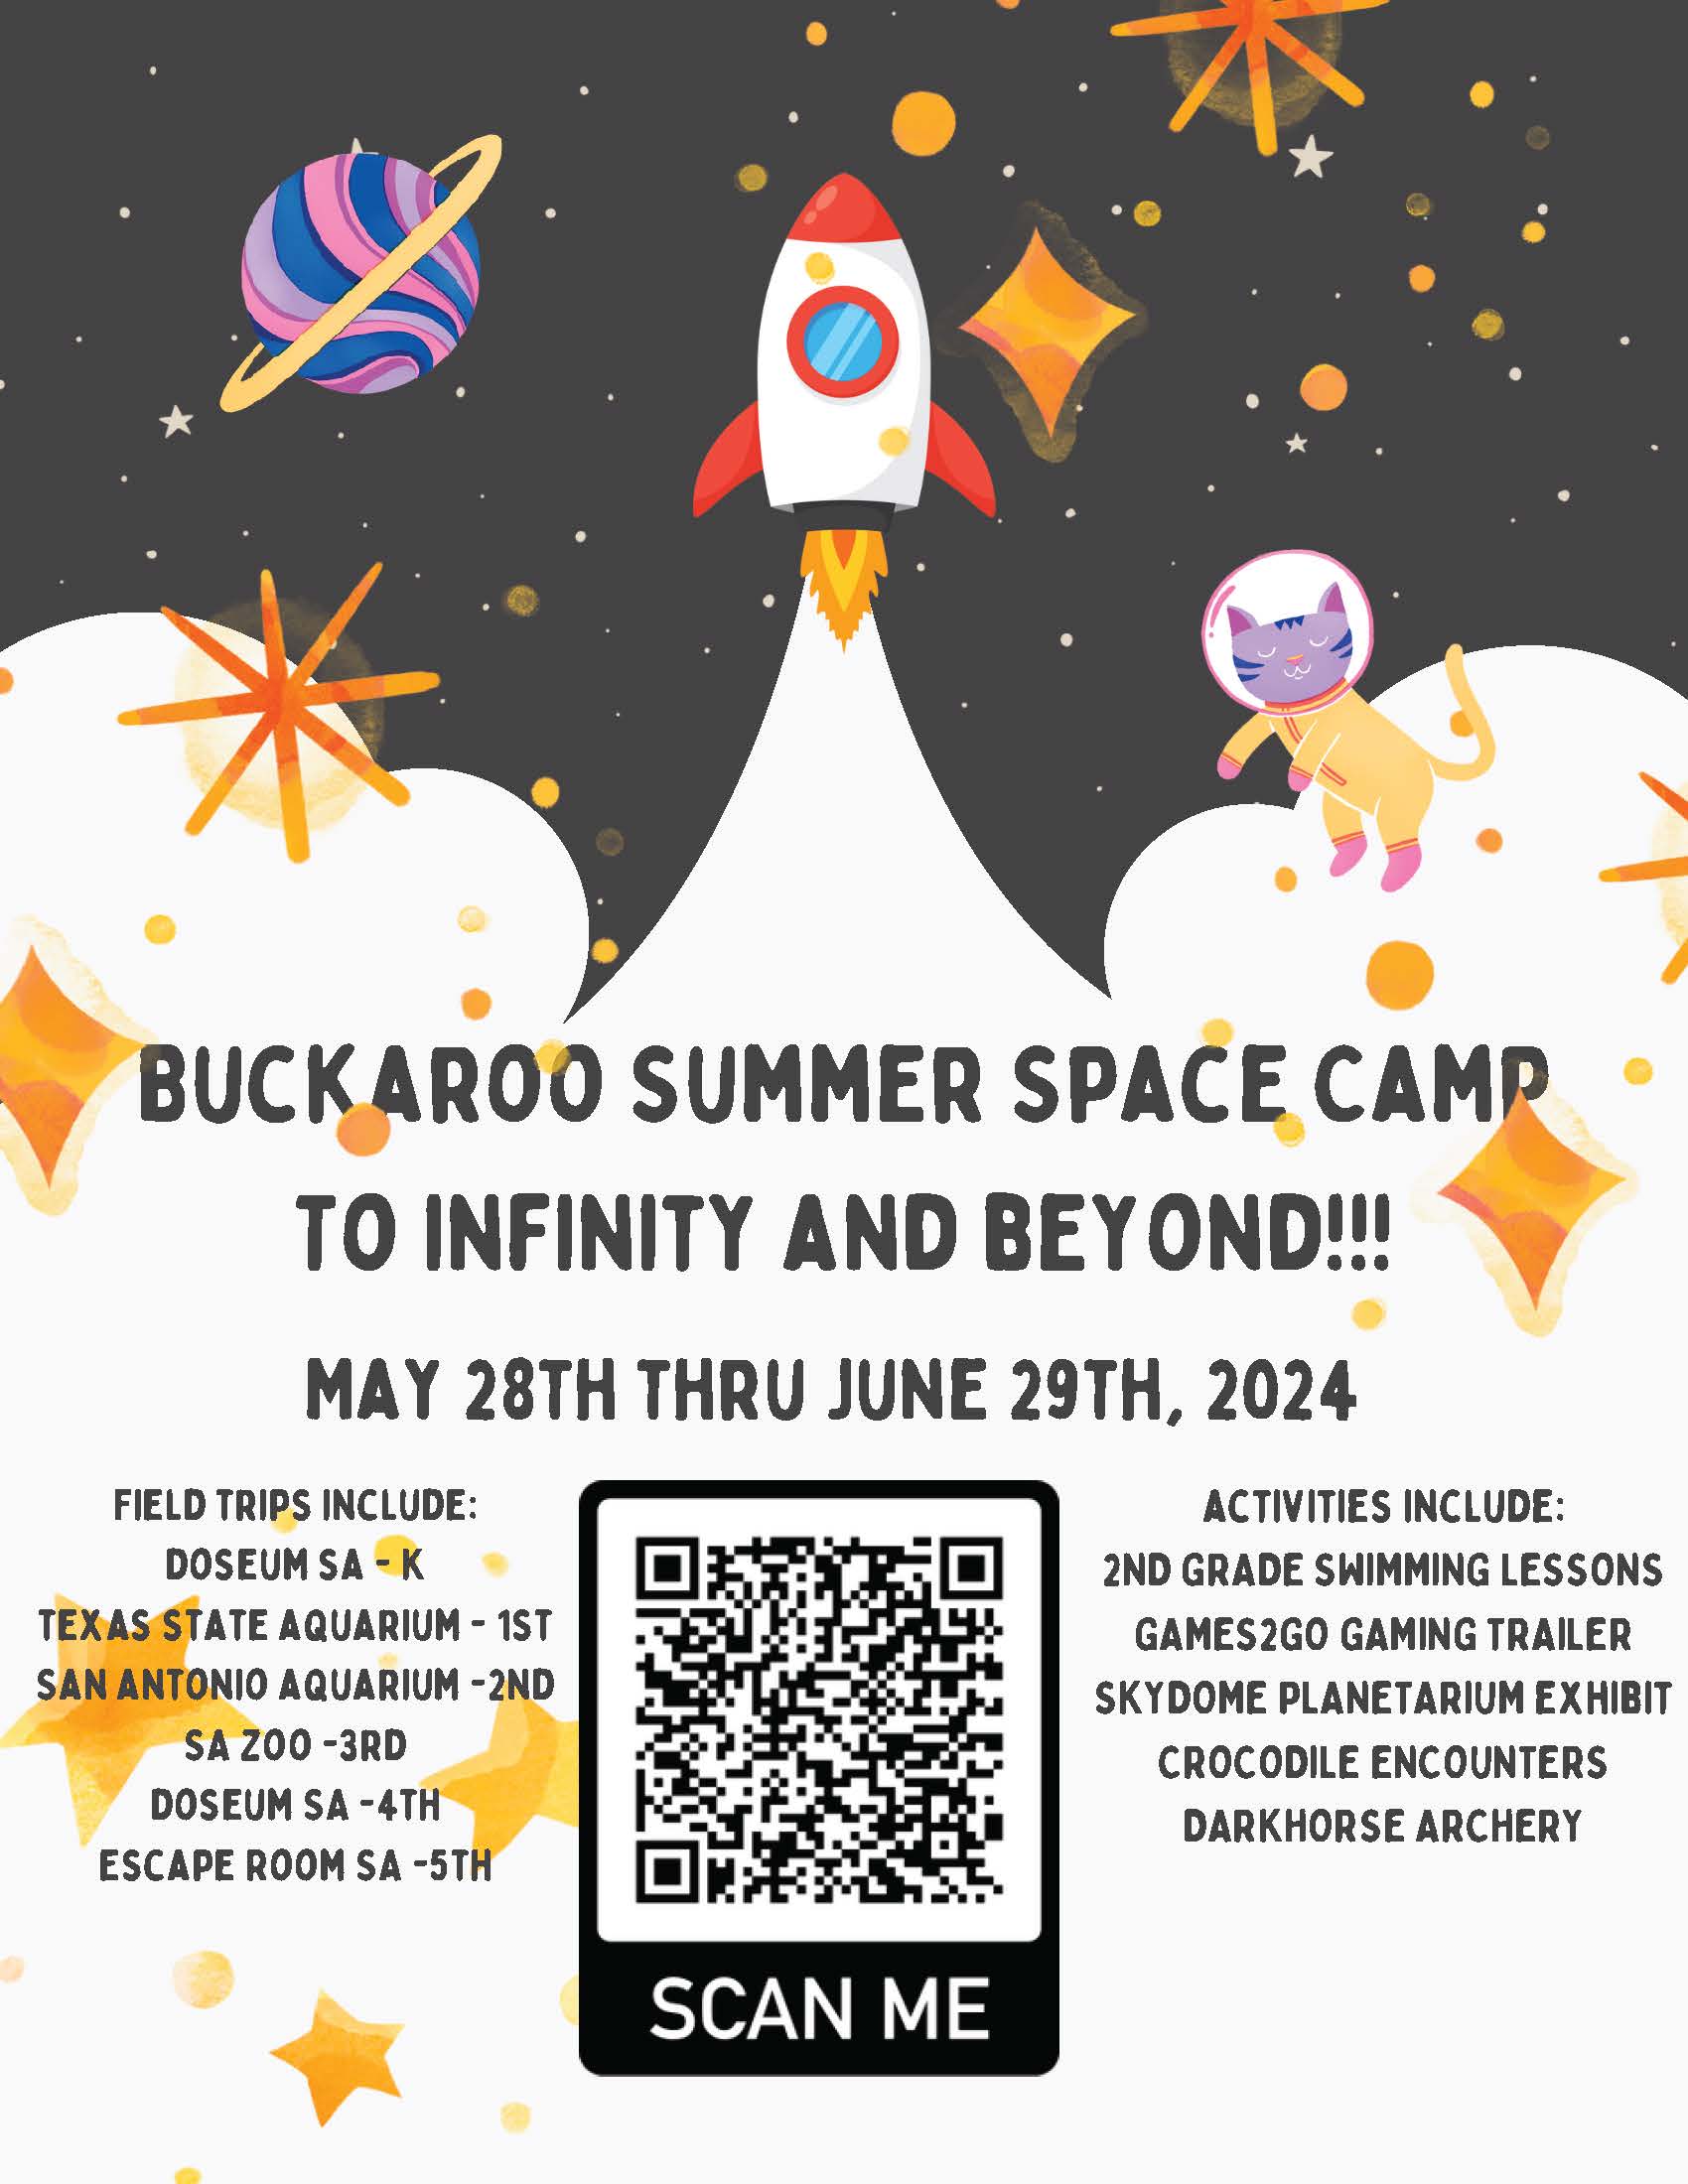 Buckaroo Summer Space Camp 2024